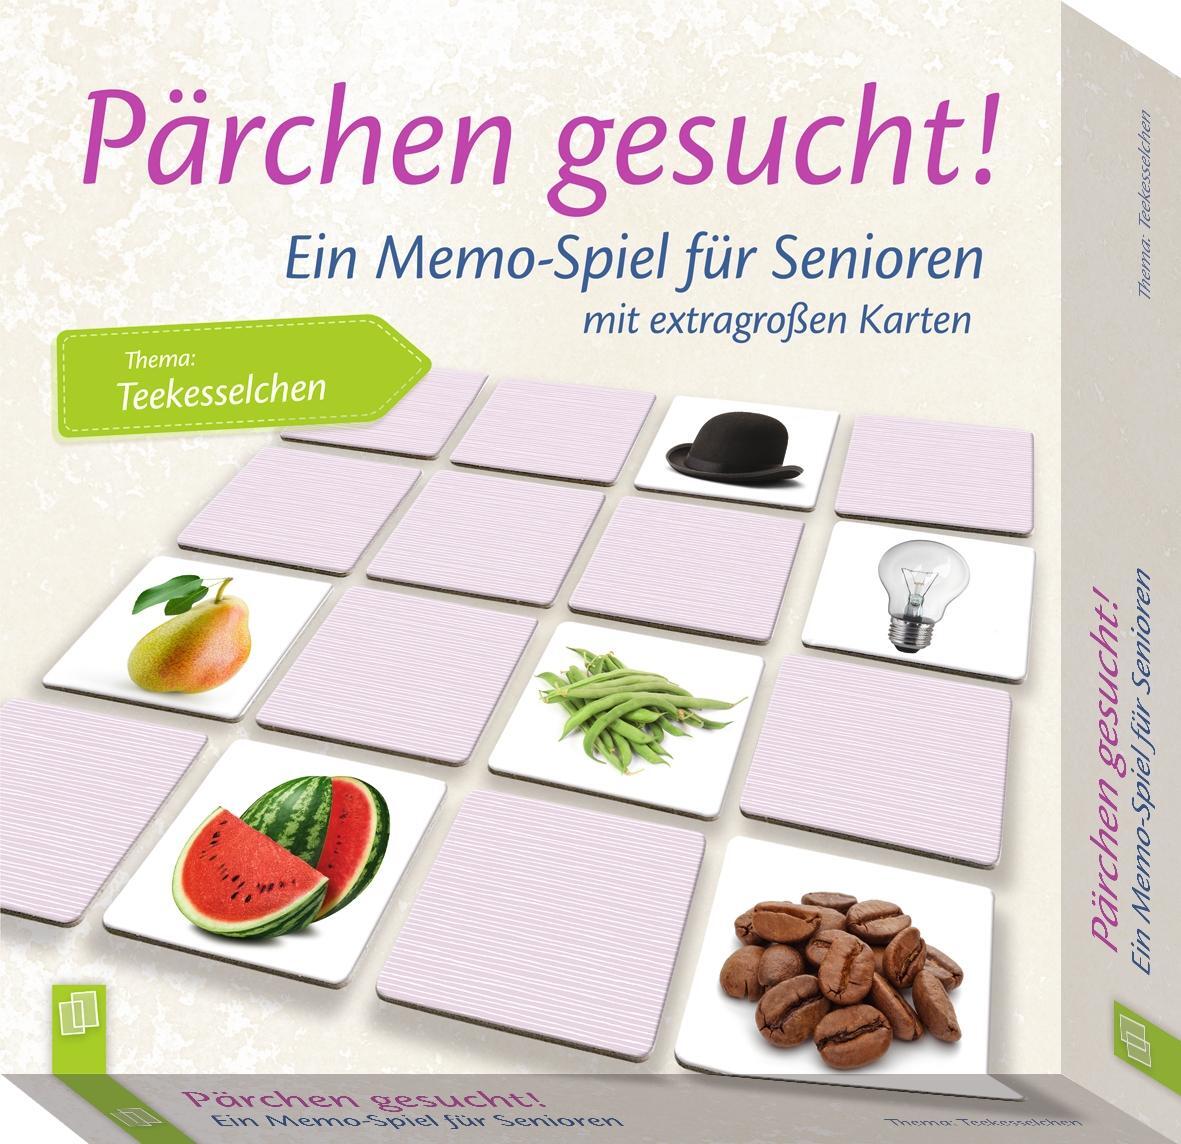 Bild: 4260217050601 | Pärchen gesucht - Thema "Teekesselchen" | Spiel | Pärchen gesucht!